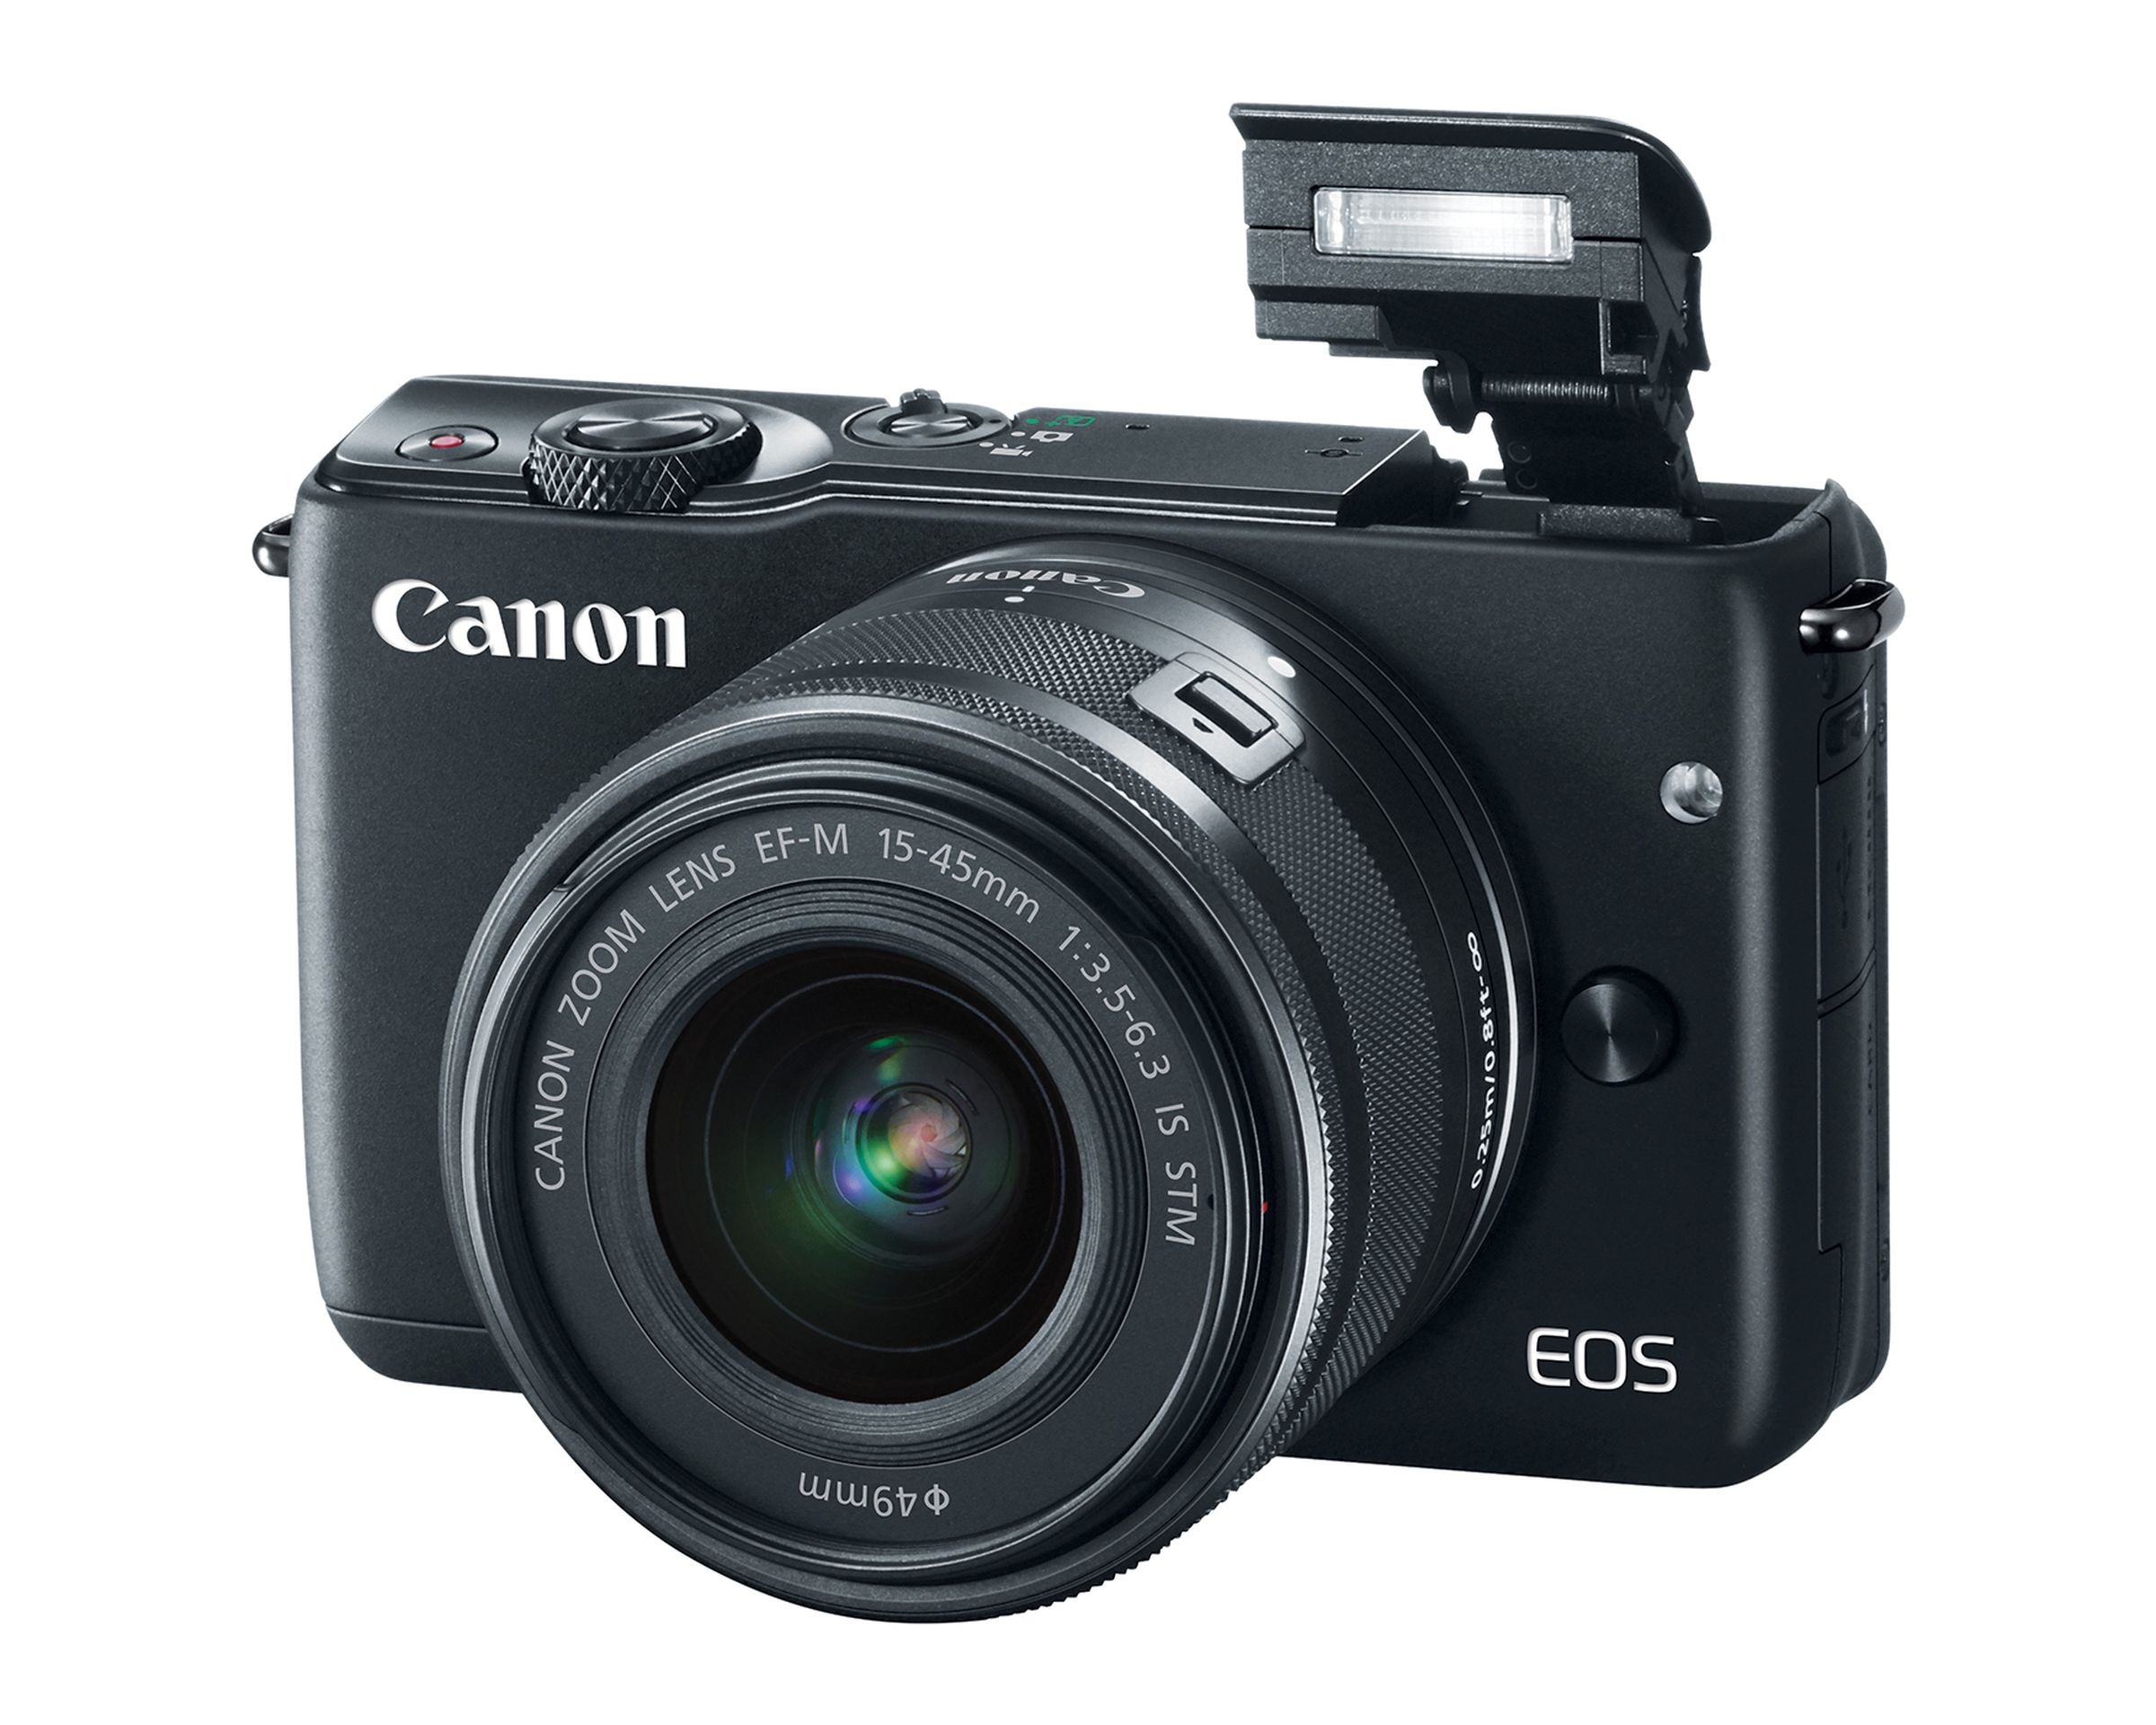 Canon EOS M10 in photos